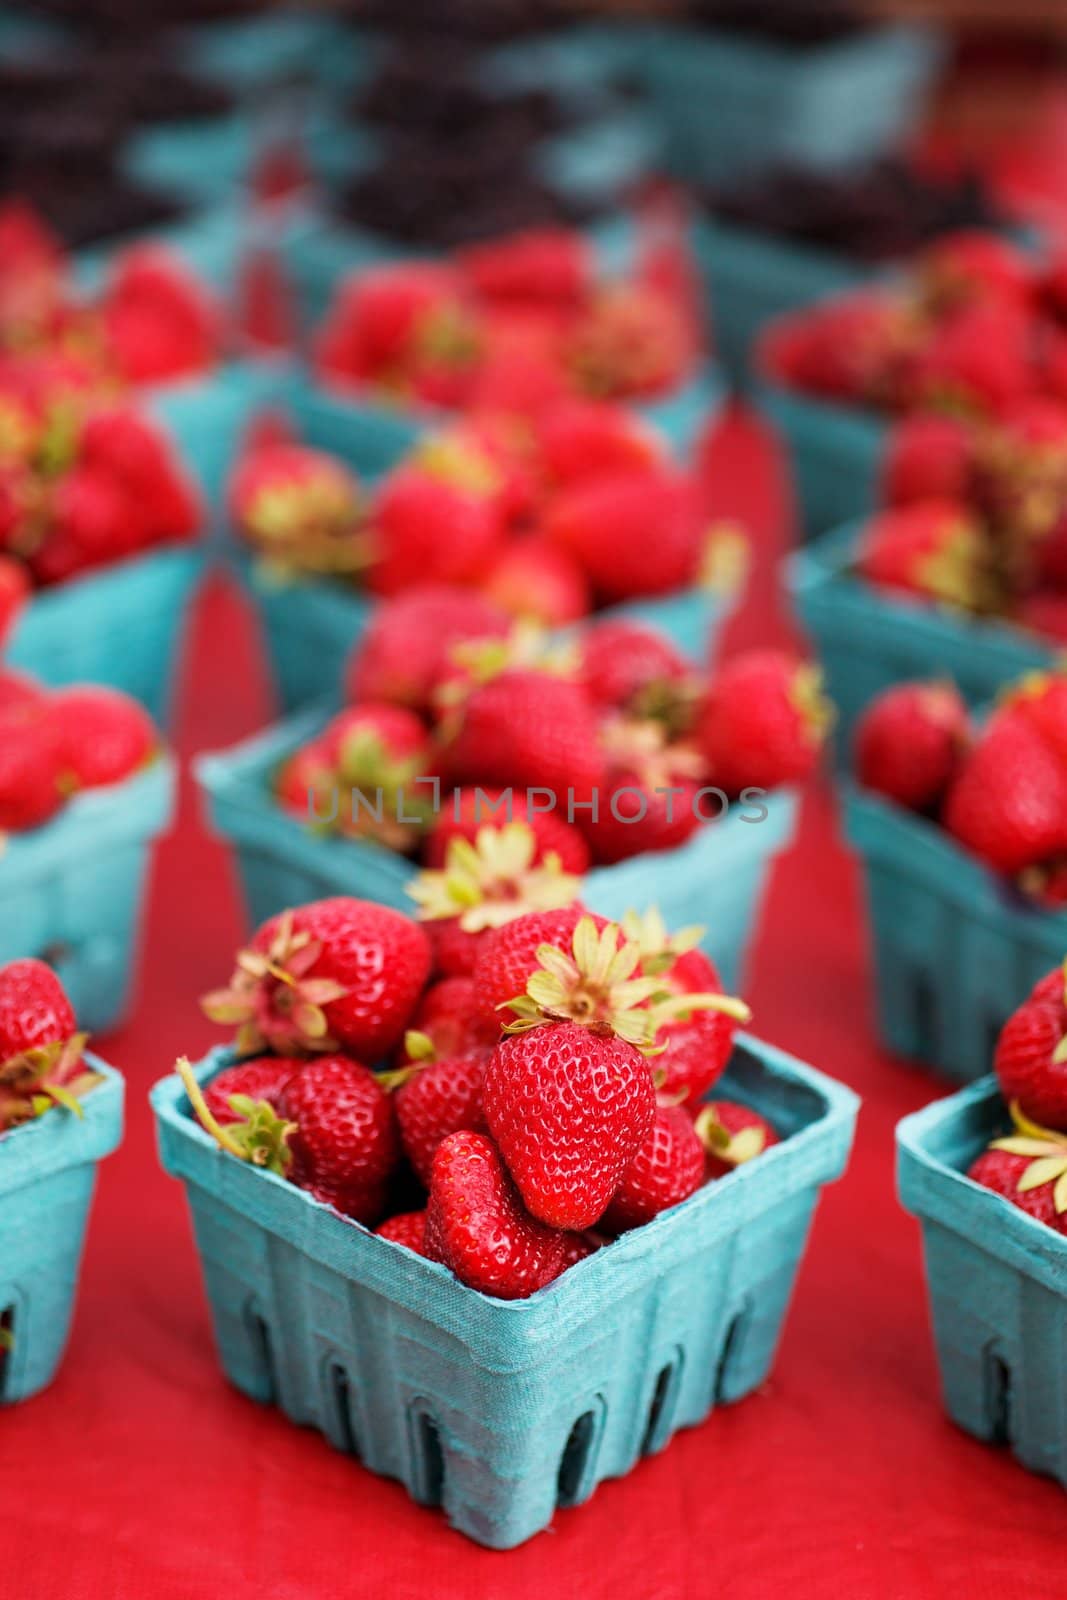 Narrow focus strawberries by bobkeenan